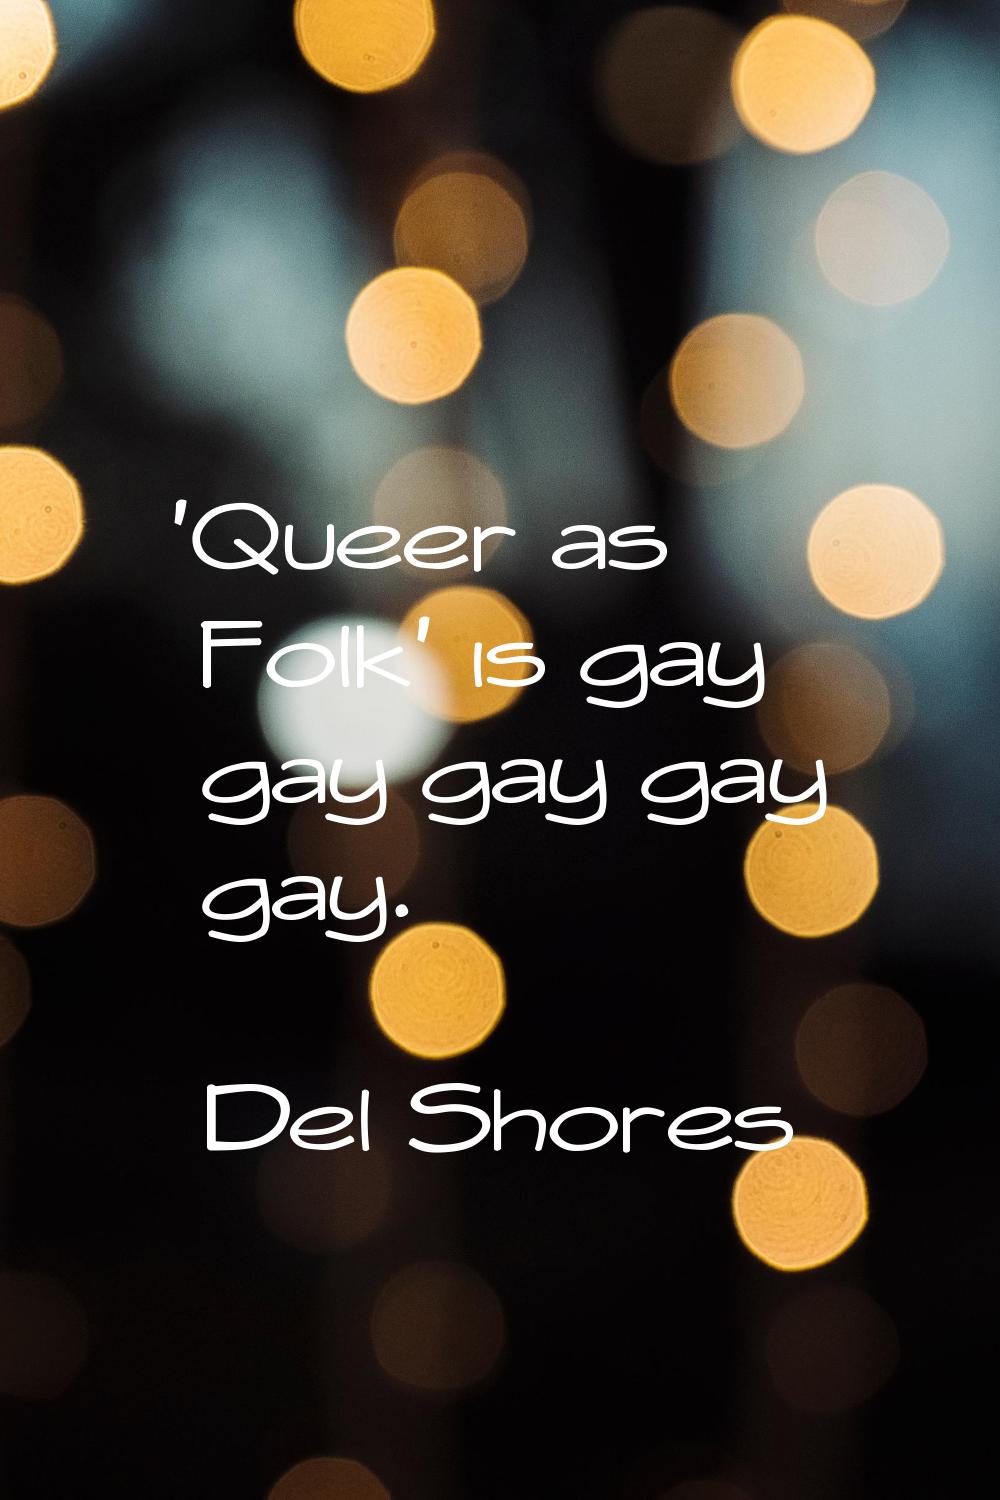 'Queer as Folk' is gay gay gay gay gay.